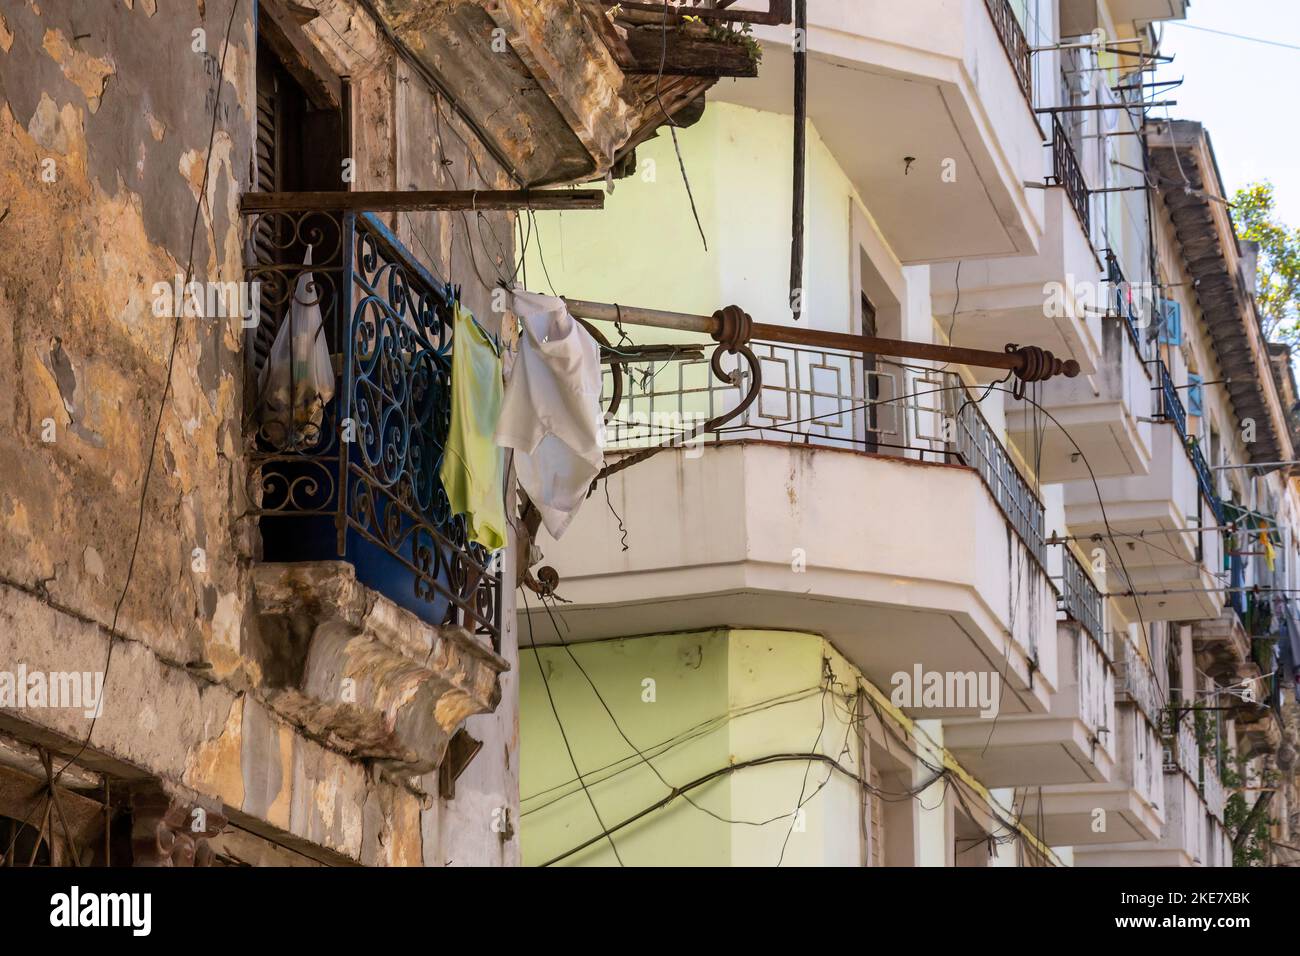 Un antiguo balcón en un edificio ruinoso, desgastado y deteriorado que contrasta con un edificio de apartamentos normal en el fondo Foto de stock